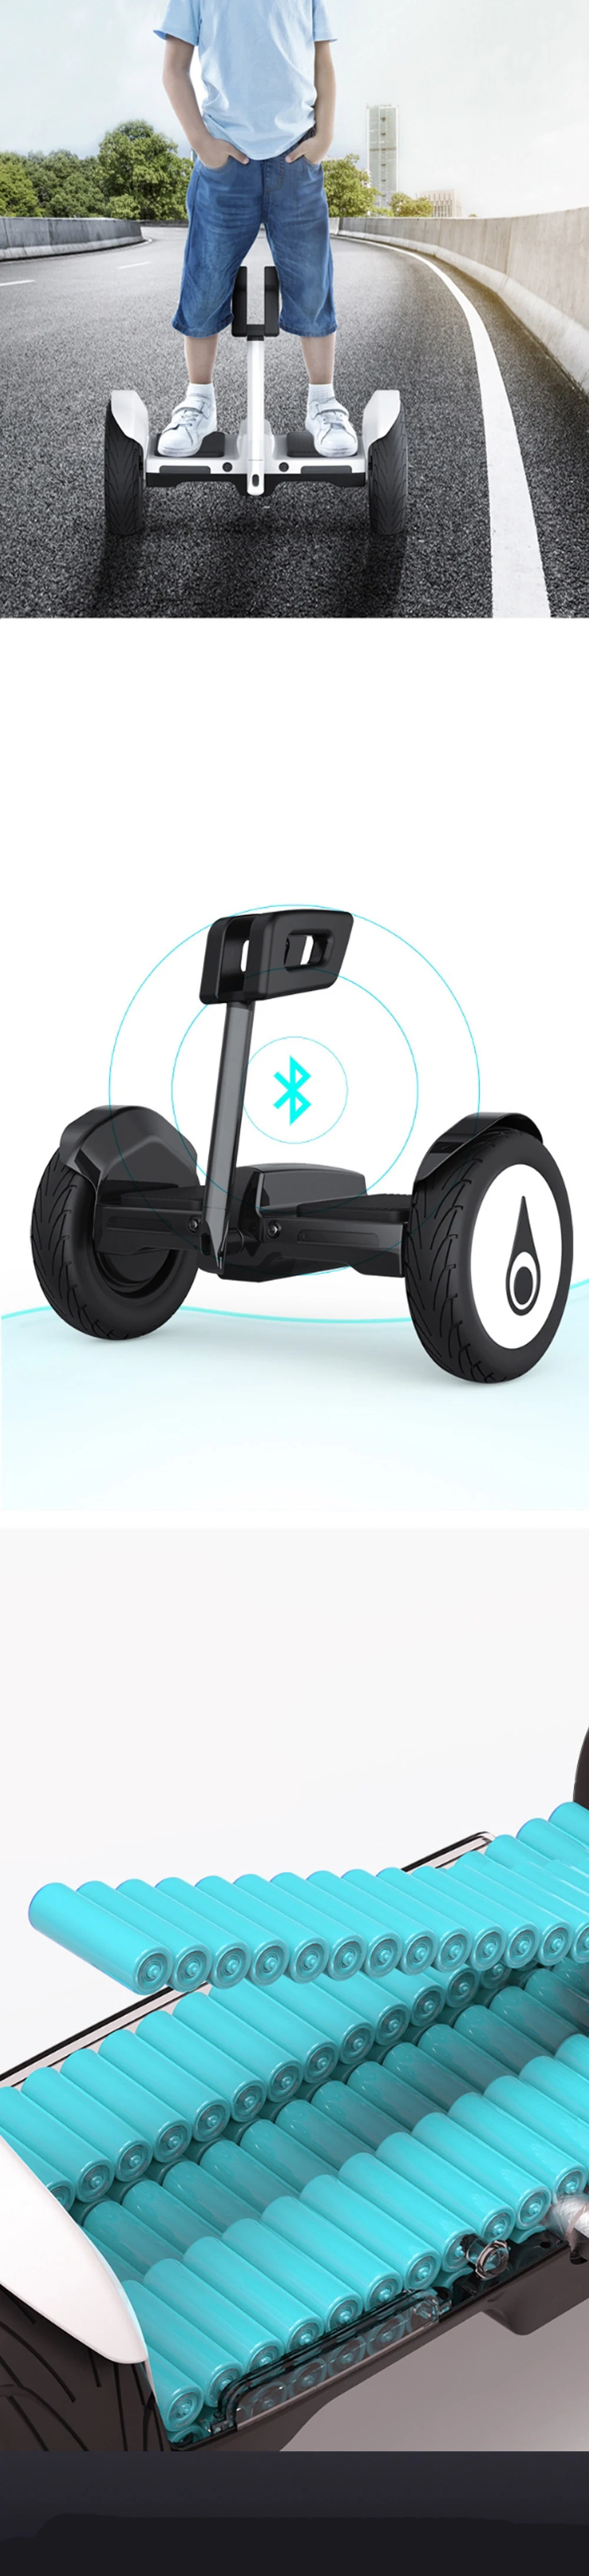 IScooter Ховерборд 10 дюймов Bluetooth 2 колеса самобалансирующийся электрический скутер два смарт колеса S9